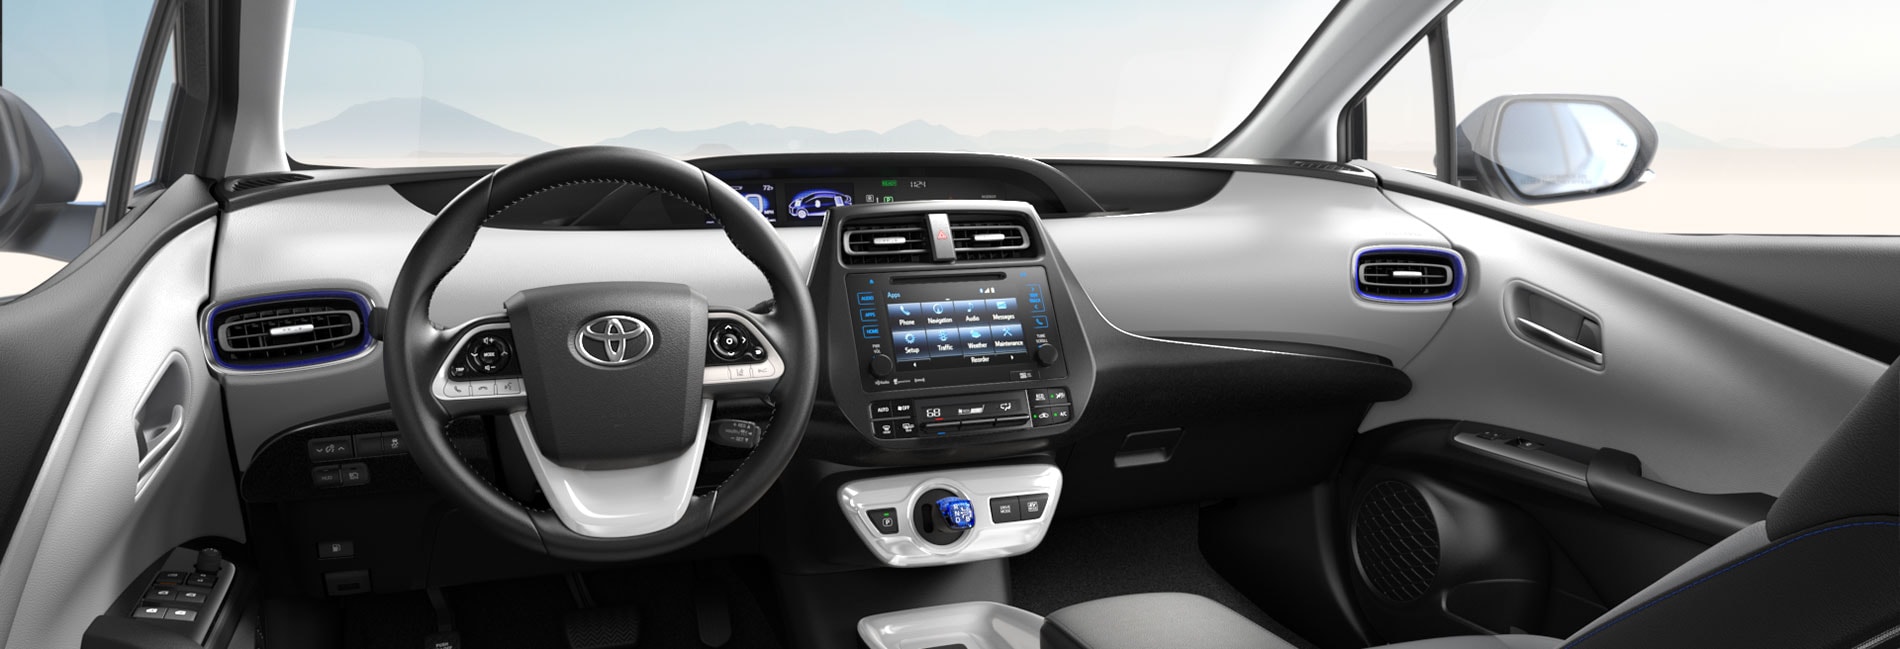 Toyota Prius Interior Vehicle Features